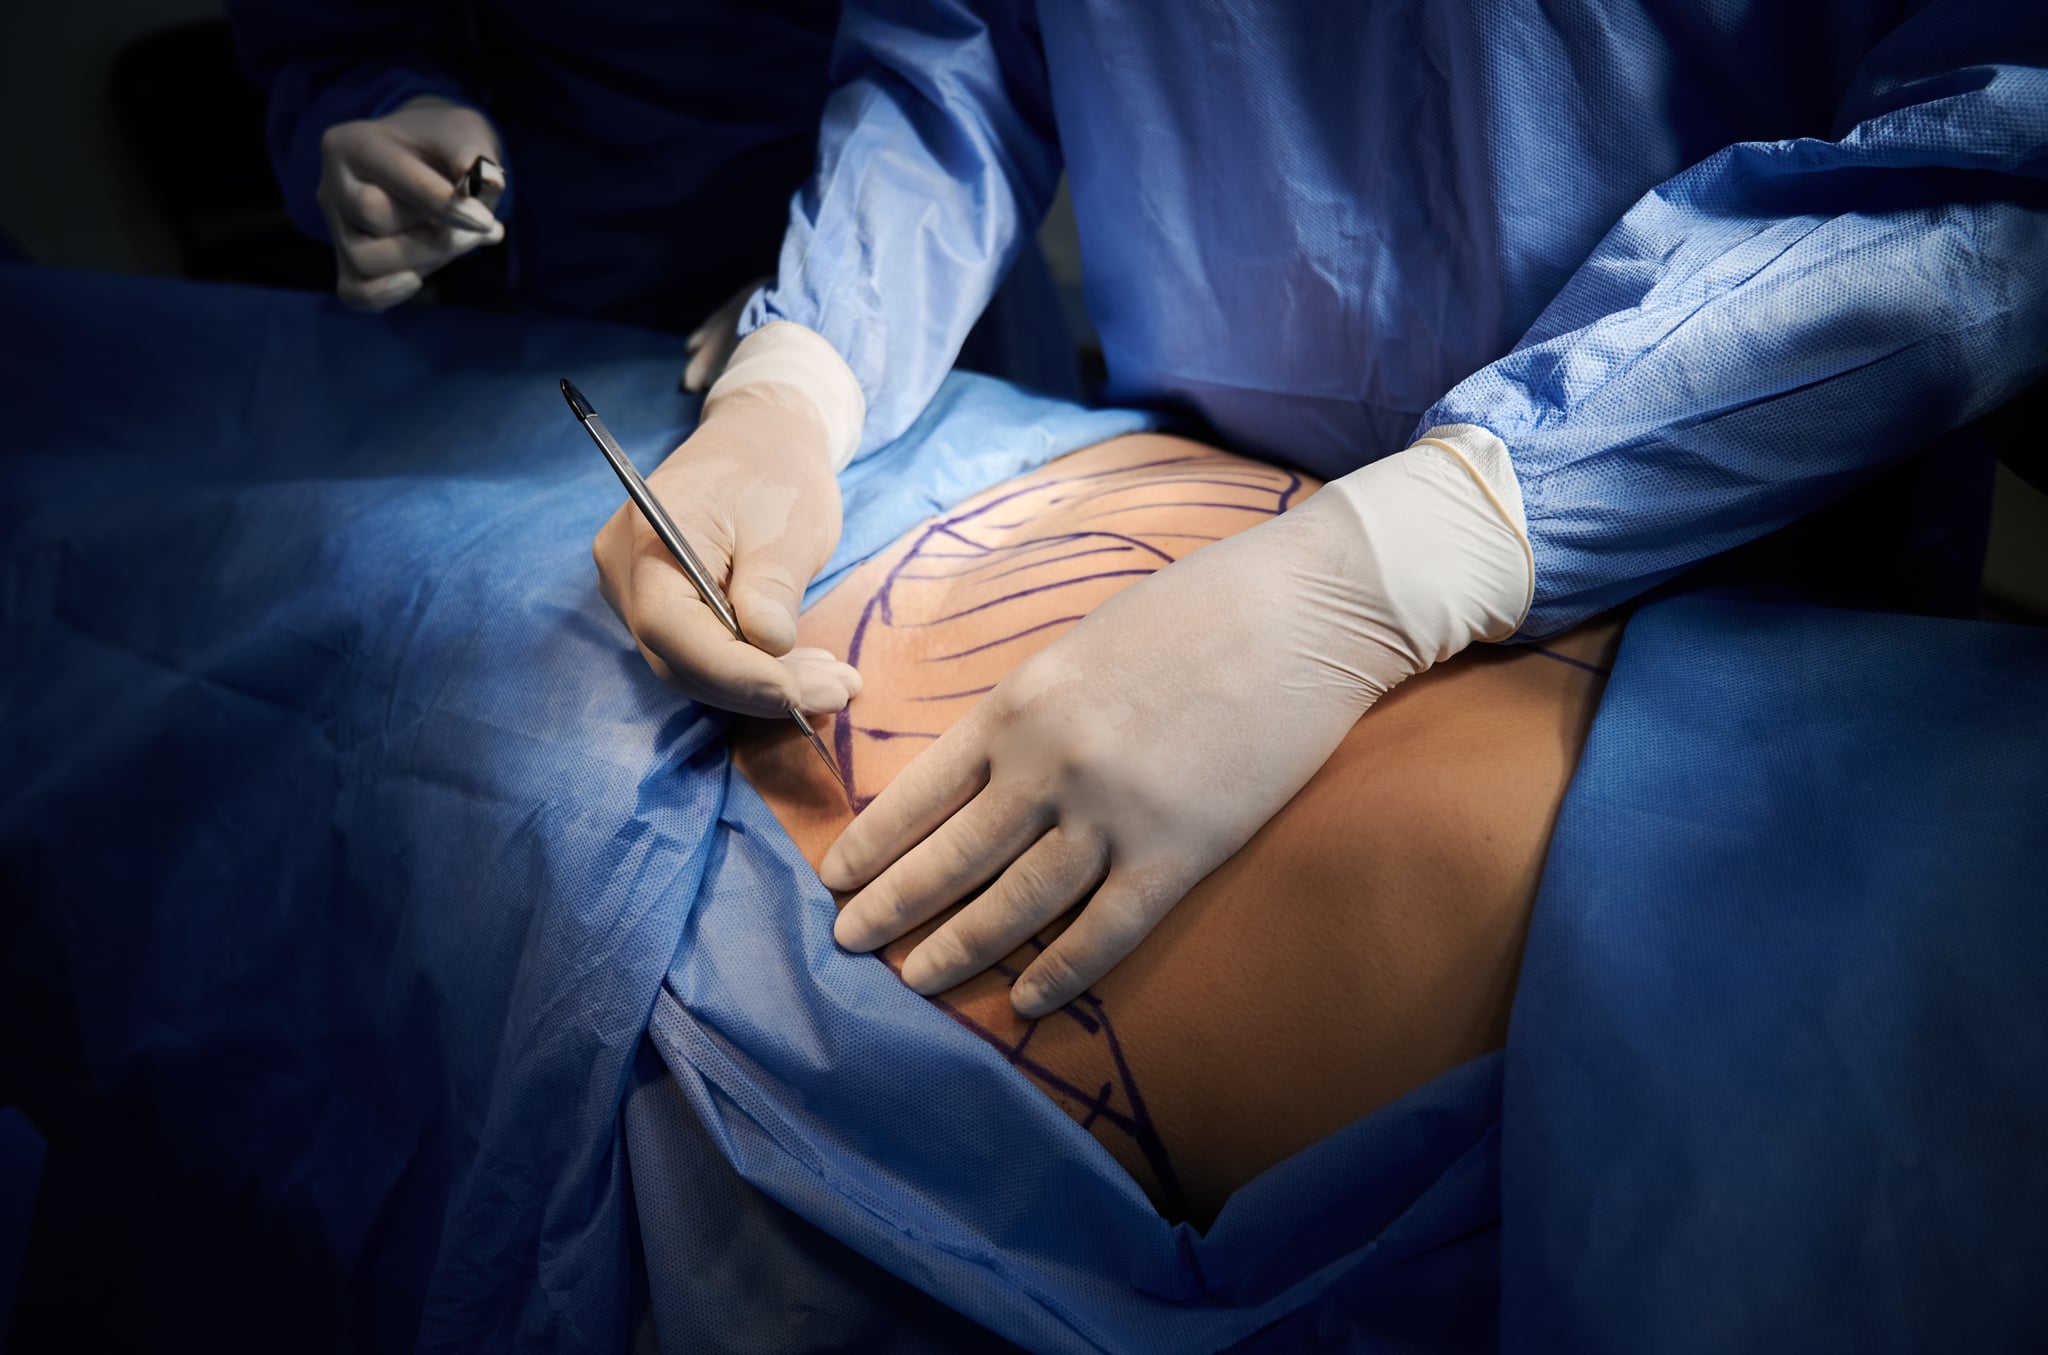 Gros plan des mains du chirurgien dans des gants stériles blancs tenant un scalpel, chirurgie plastique dans la salle d'opération.  Le chirurgien coupe l'abdomen du patient avec des ecchymoses sur la peau.  Concept de médecine et d'abdominoplastie.